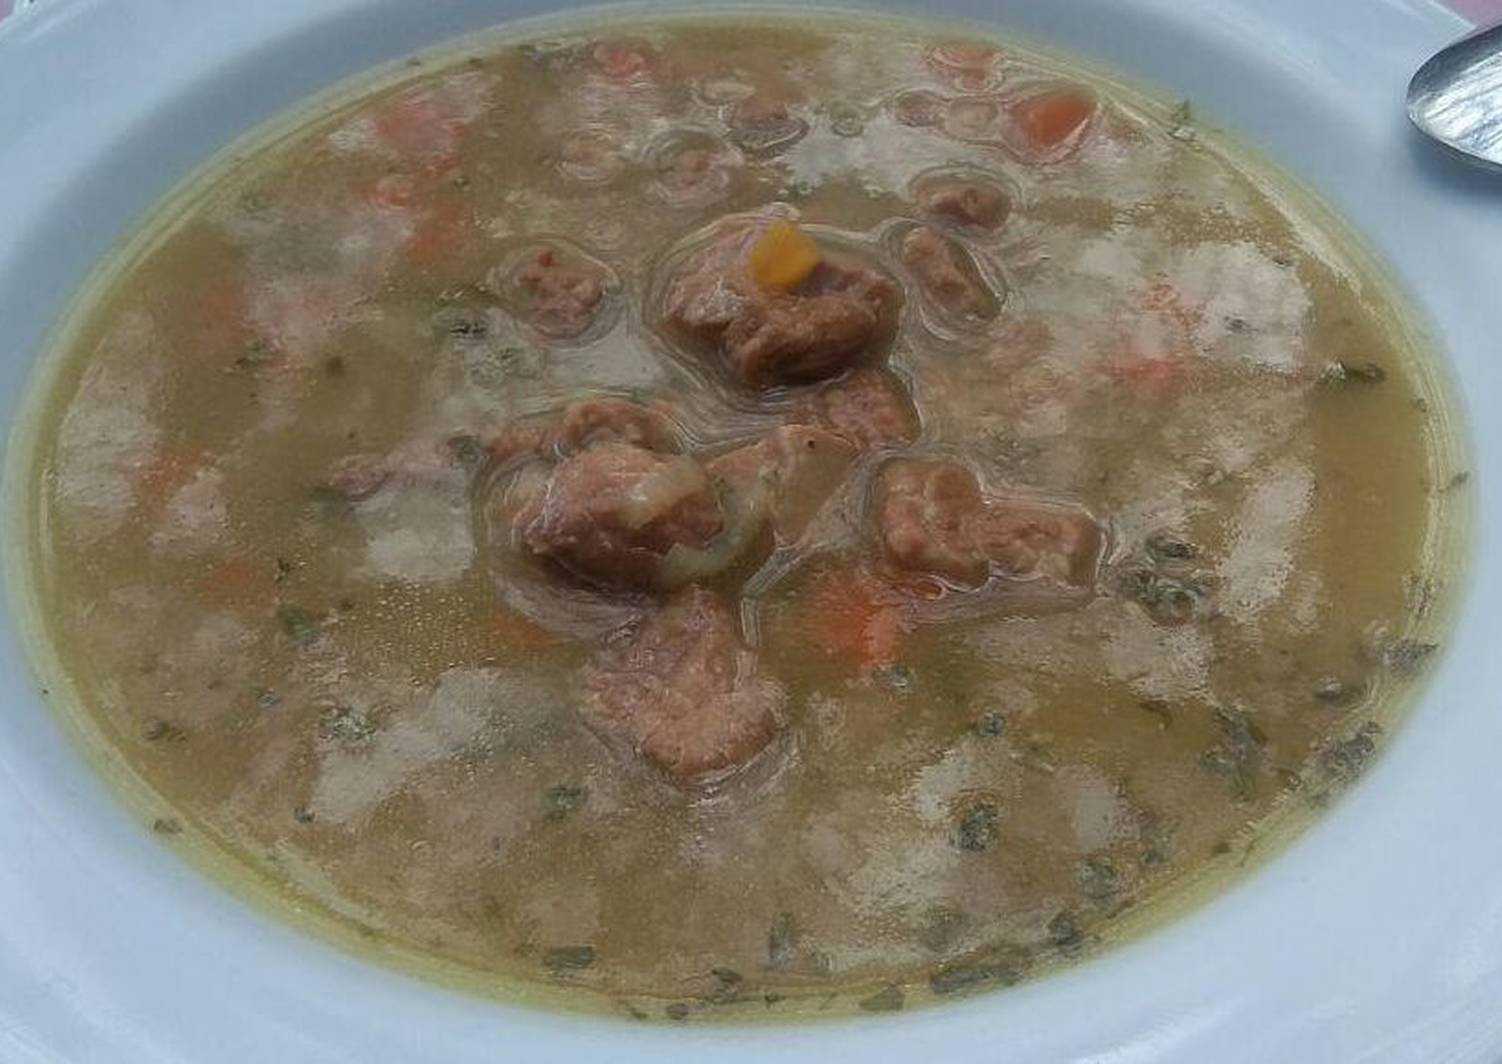 Суп гороховый с тушенкой рецепт с фото